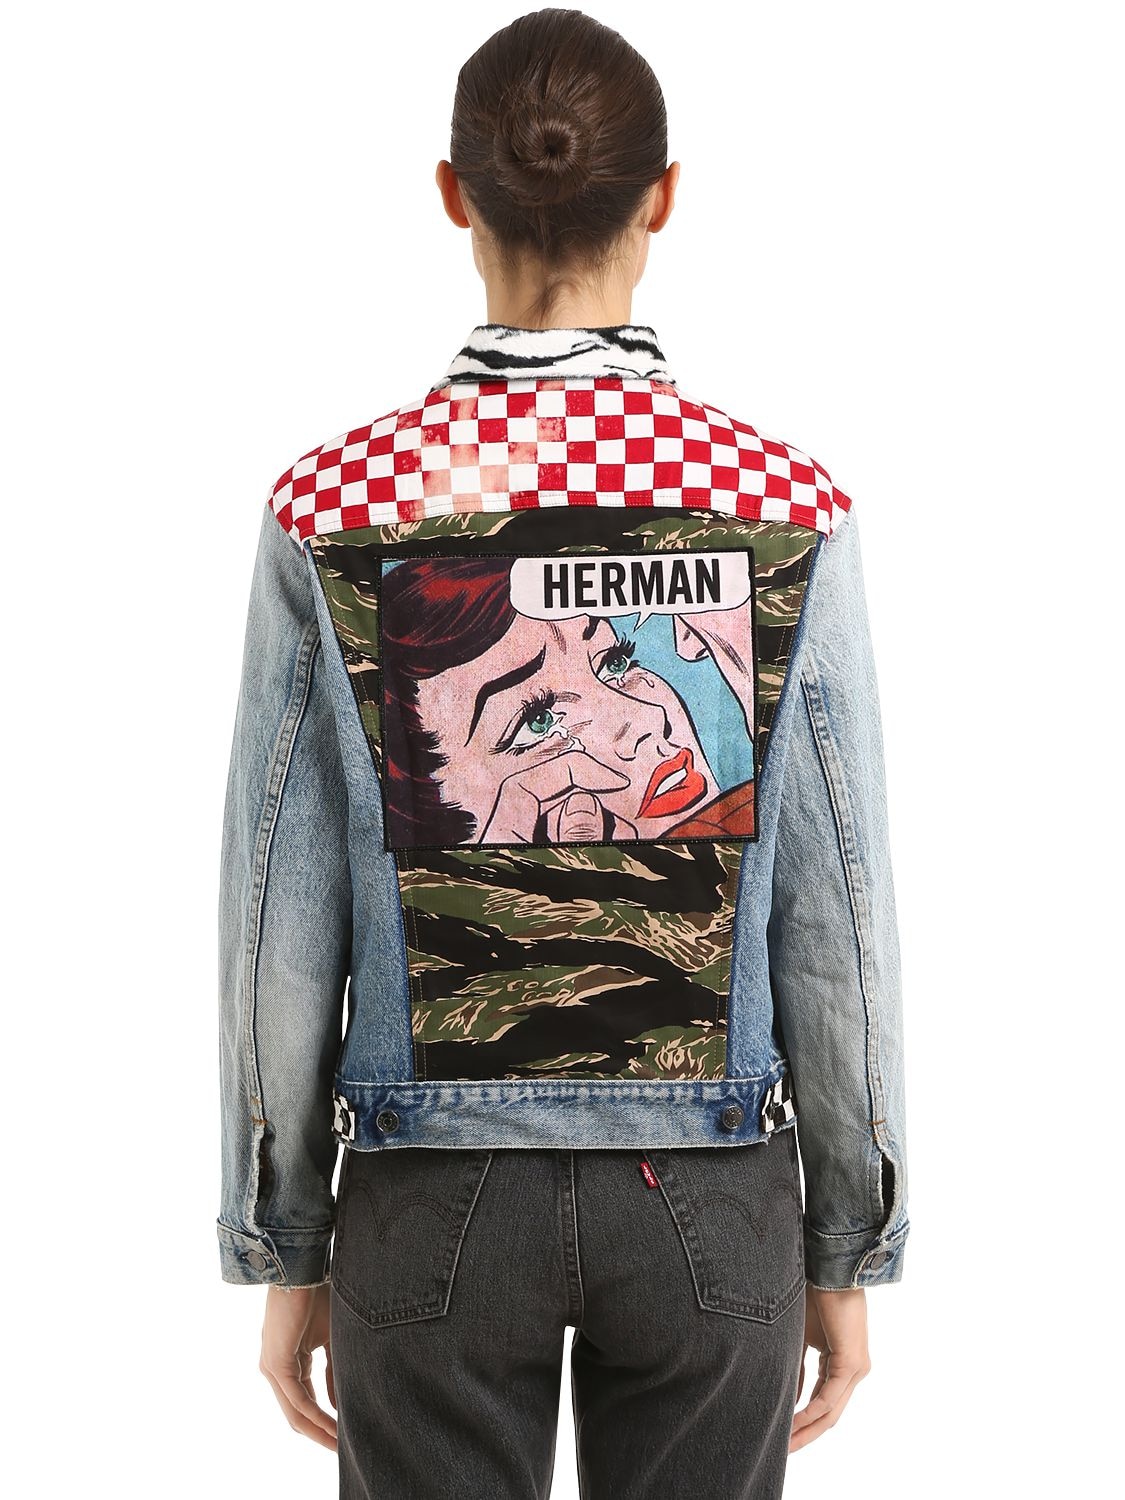 Herman Market Patchwork Cotton Denim Jacket In Blue,red